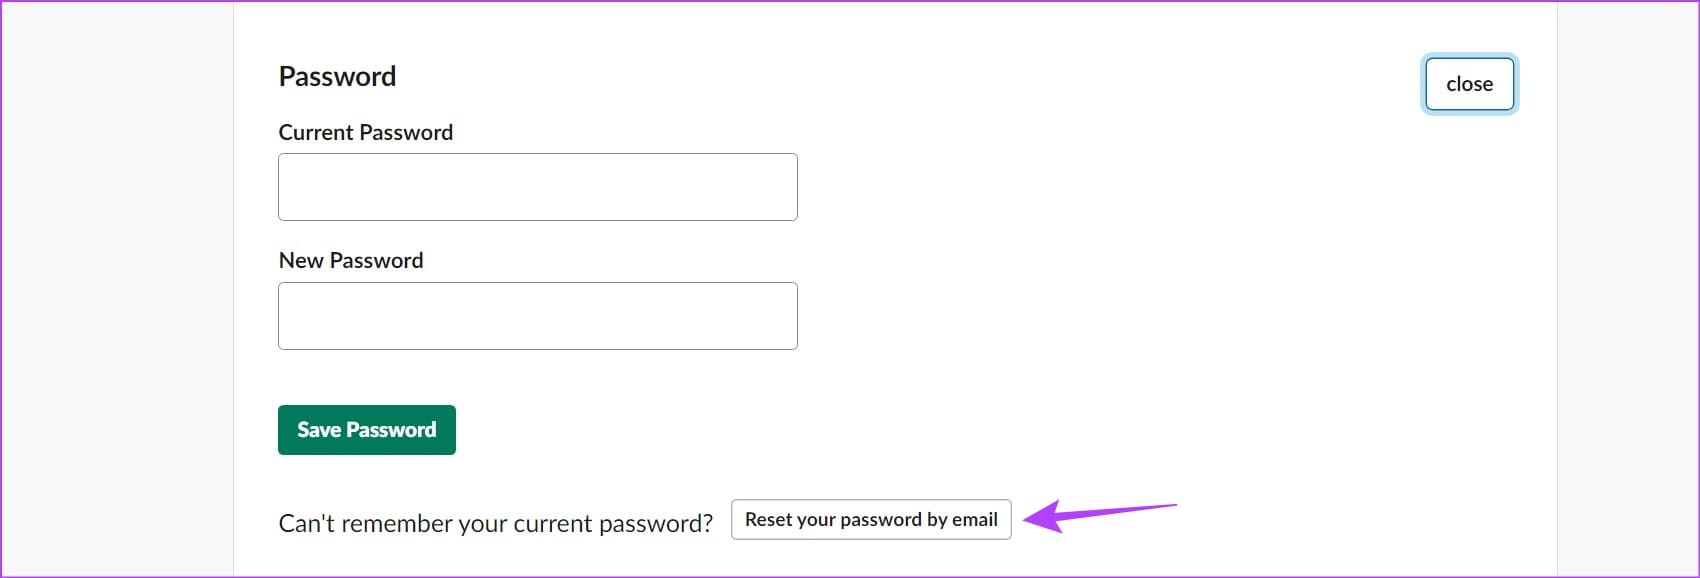 Open reset password window